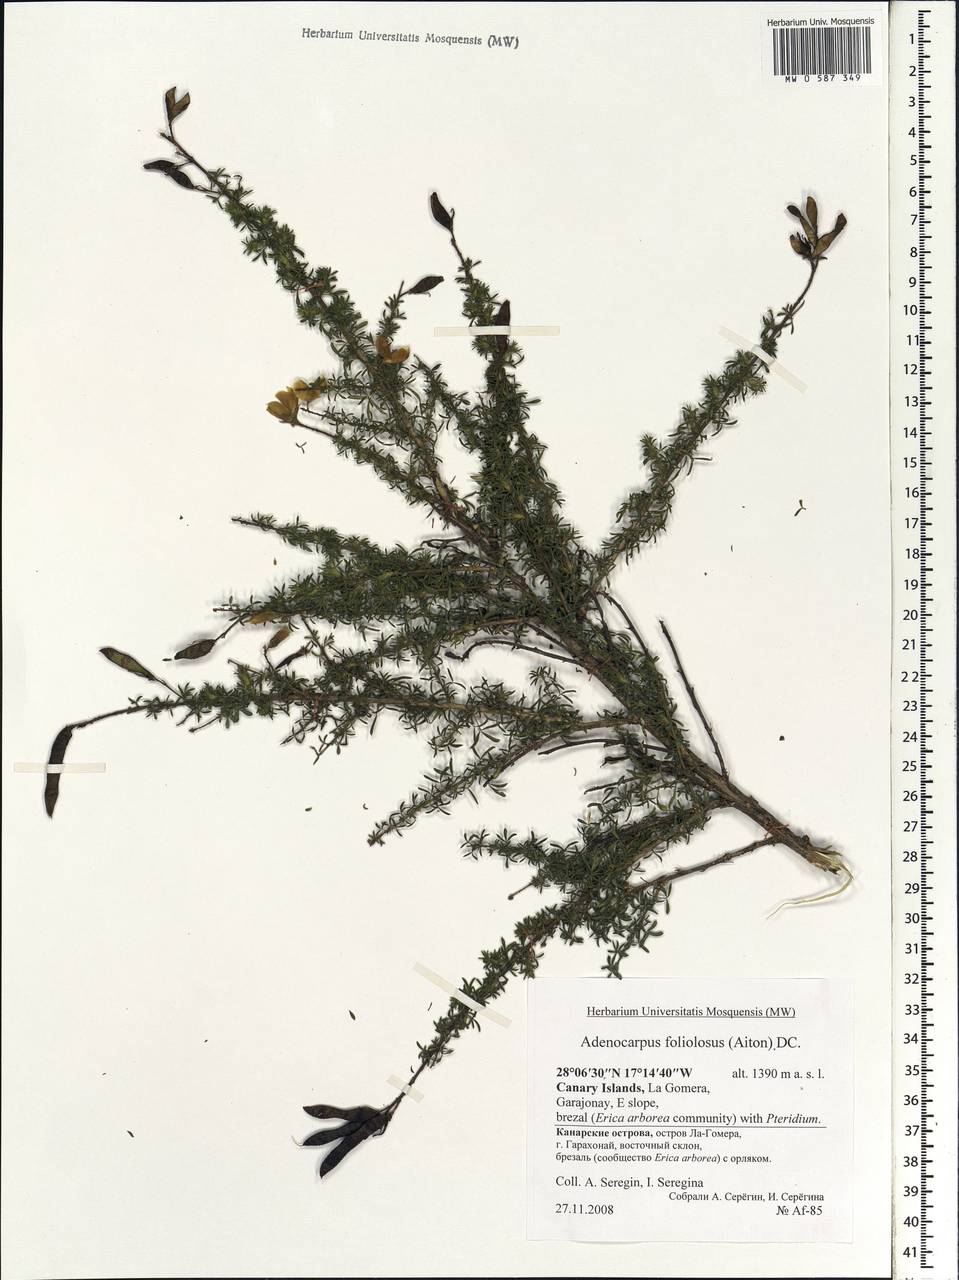 Adenocarpus foliolosus (Aiton)DC., Africa (AFR) (Spain)